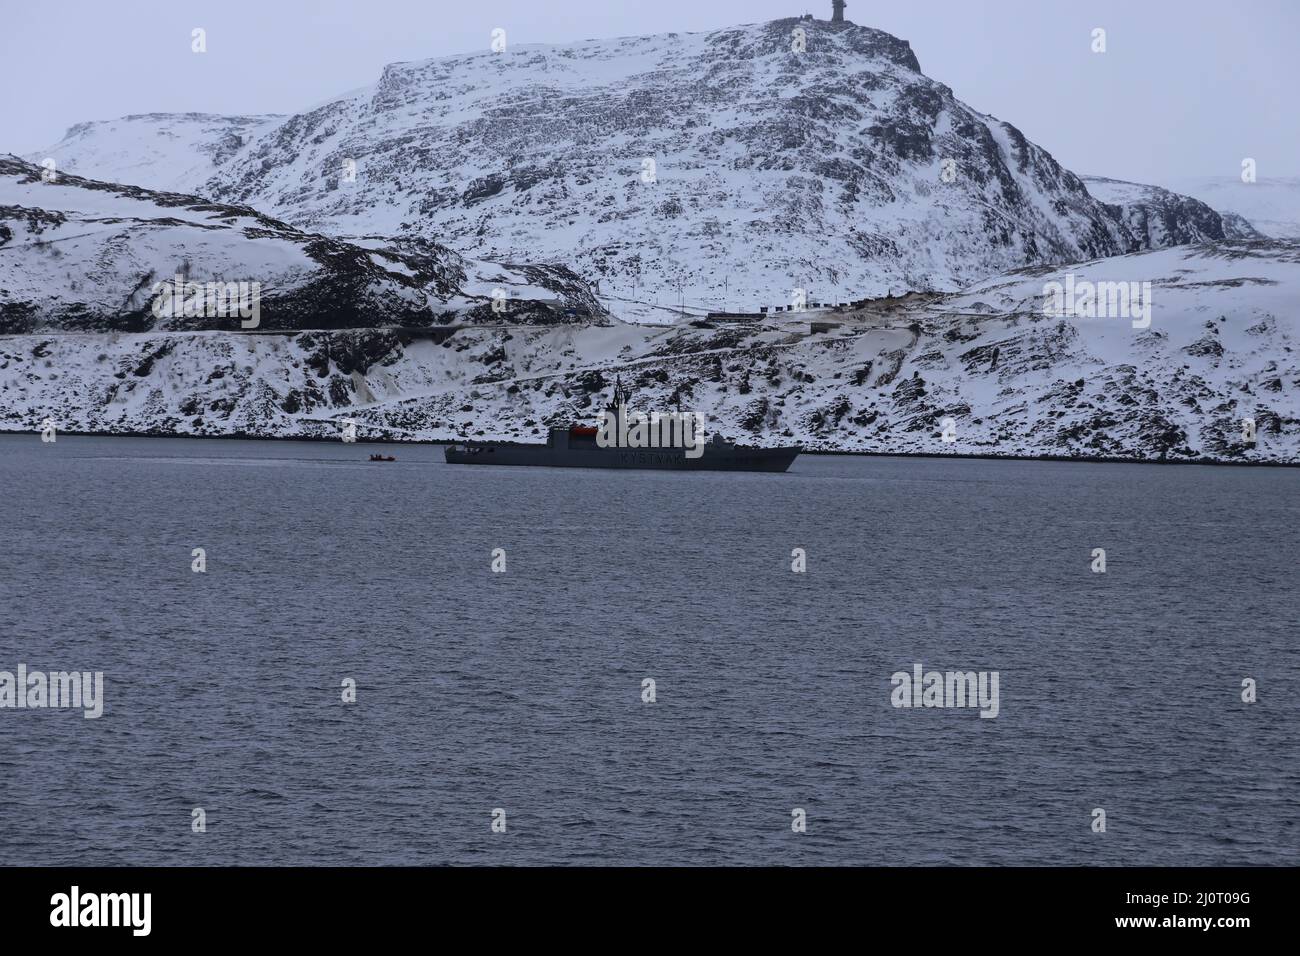 Vor Hammerfest, Norwegen, wird auf der Insel Melkoya Erdgas aus dem Schneewittchenfeld verflüssigt und auf Spezialschiffen nach Spanien und Nordamerika transportiert. Die Anlage wird von Equinor ASA (vormals Statoil) betrieben. Die norwegische Küstenwache schützt die Insel. Stock Photo